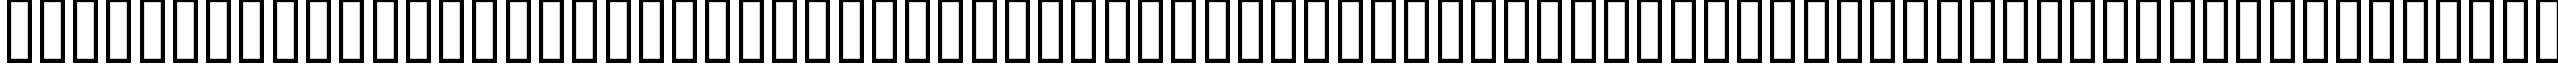 Пример написания английского алфавита шрифтом Arnold 2.1